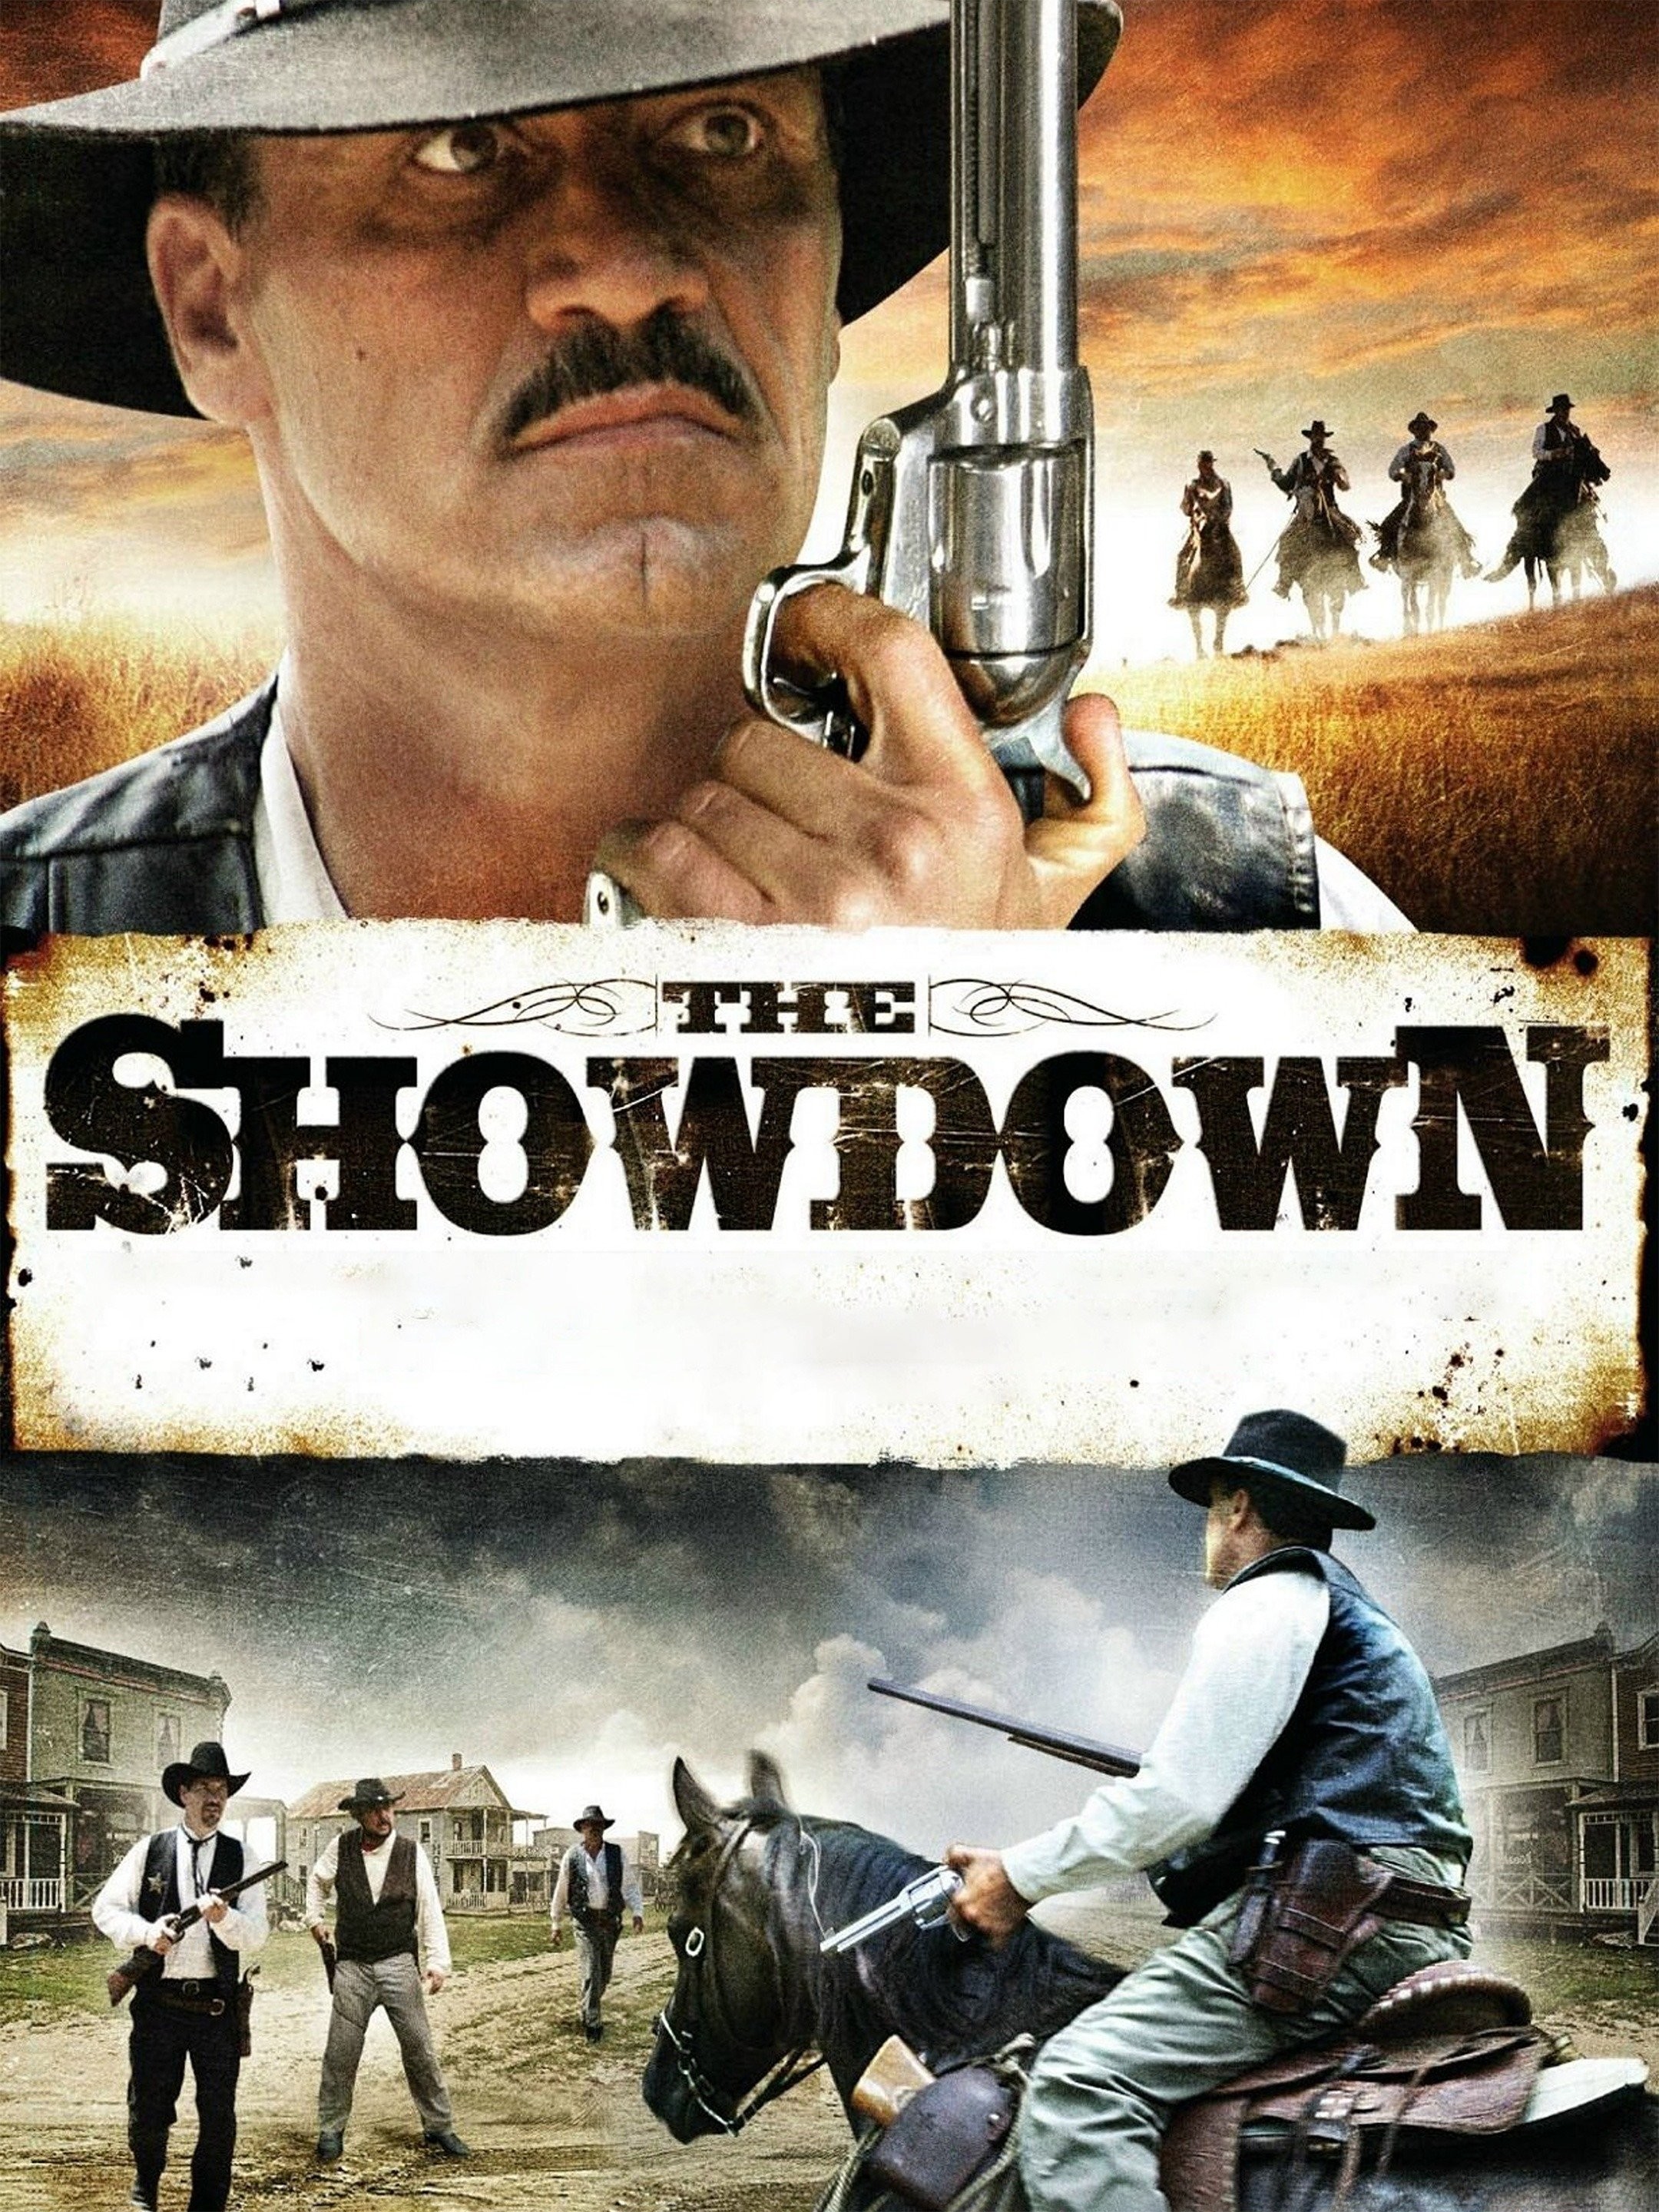 Showdown - Rotten Tomatoes